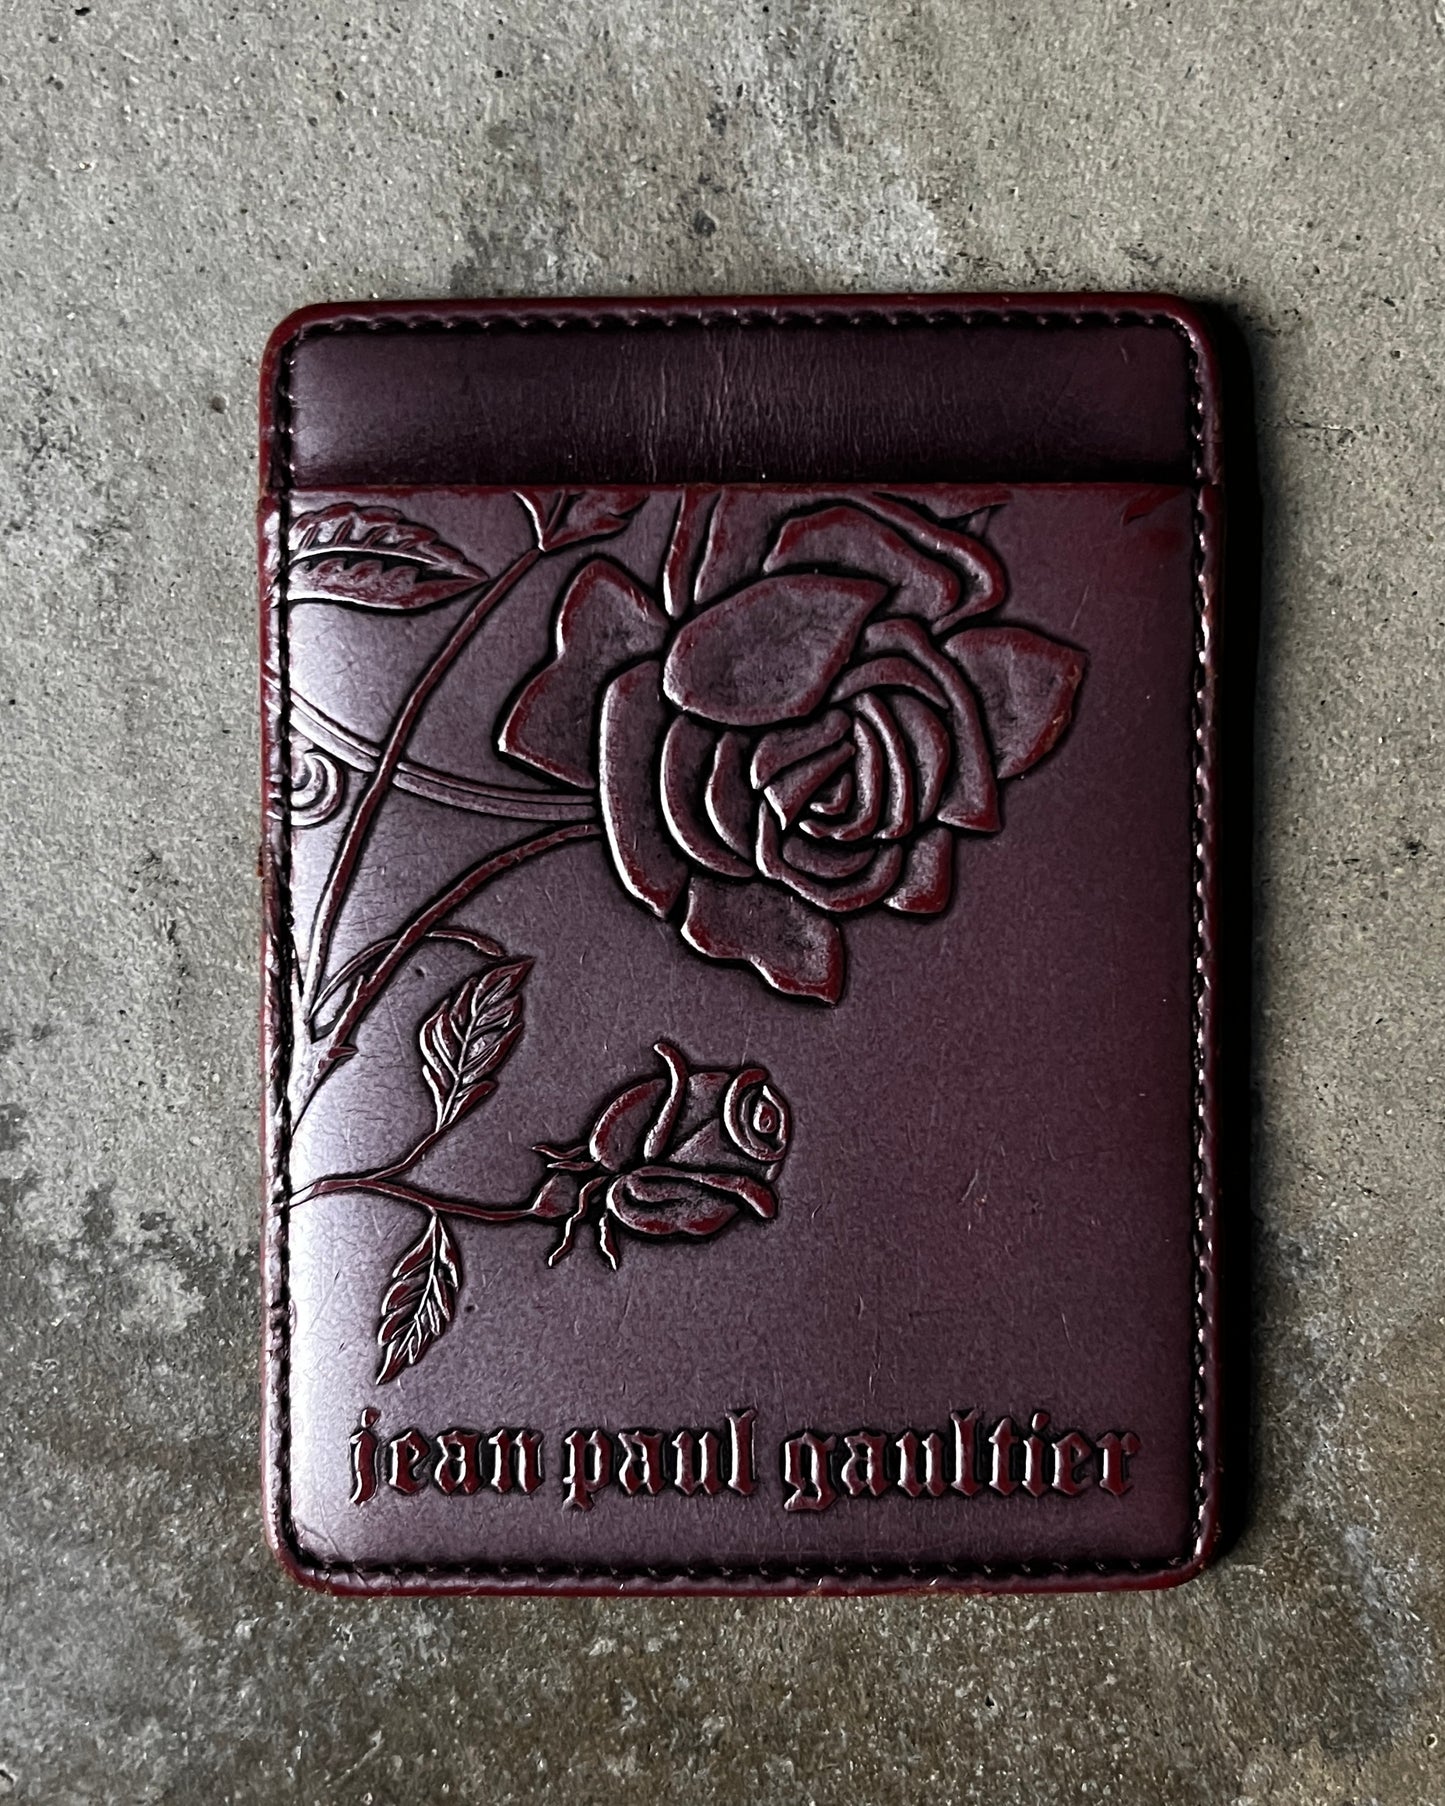 Jean Paul Gaultier Rose Wallet